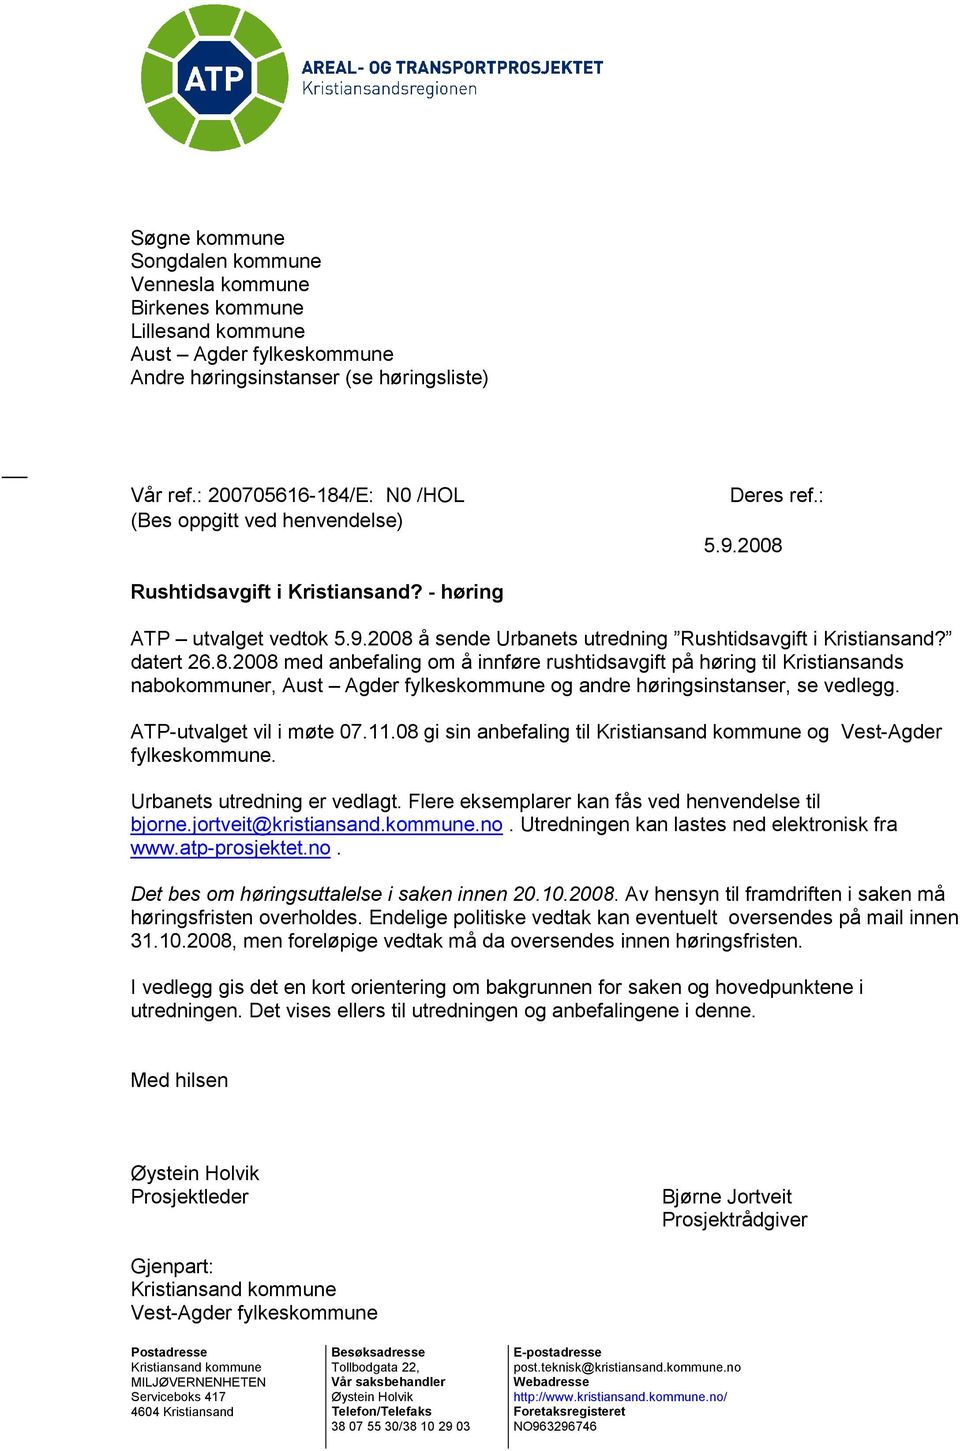 datert 26.8.2008 med anbefaling om å innføre rushtidsavgift på høring til Kristiansands nabokommuner, Aust Agder fylkeskommune og andre høringsinstanser, se vedlegg. ATP-utvalget vil i møte 07.11.